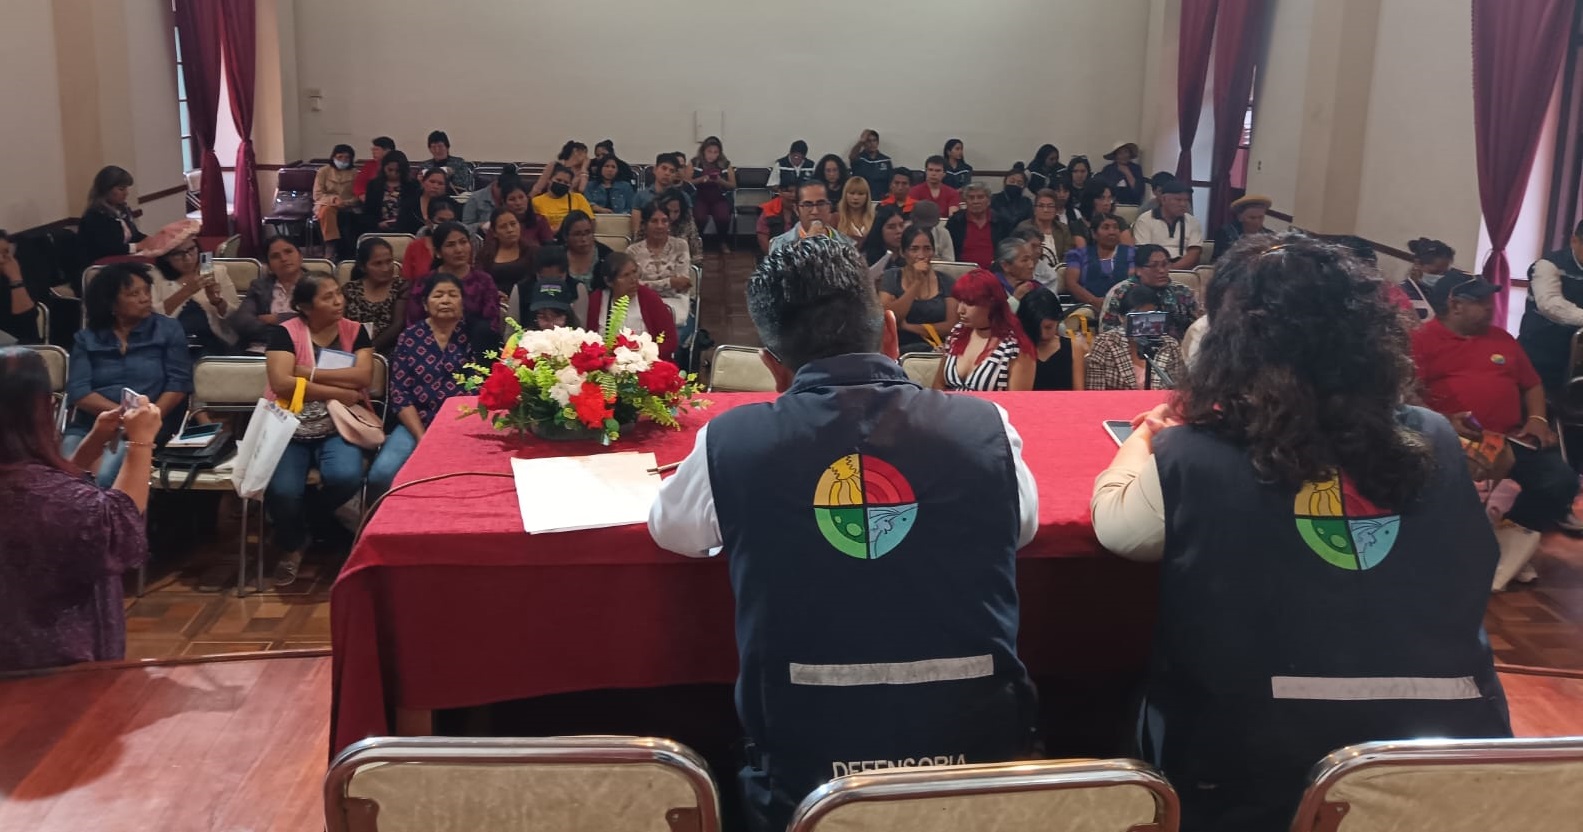 Organizaciones demandan atención médica y recepción de denuncias en casos de violencia en audiencia pública de la Defensoría del Pueblo en Tarija